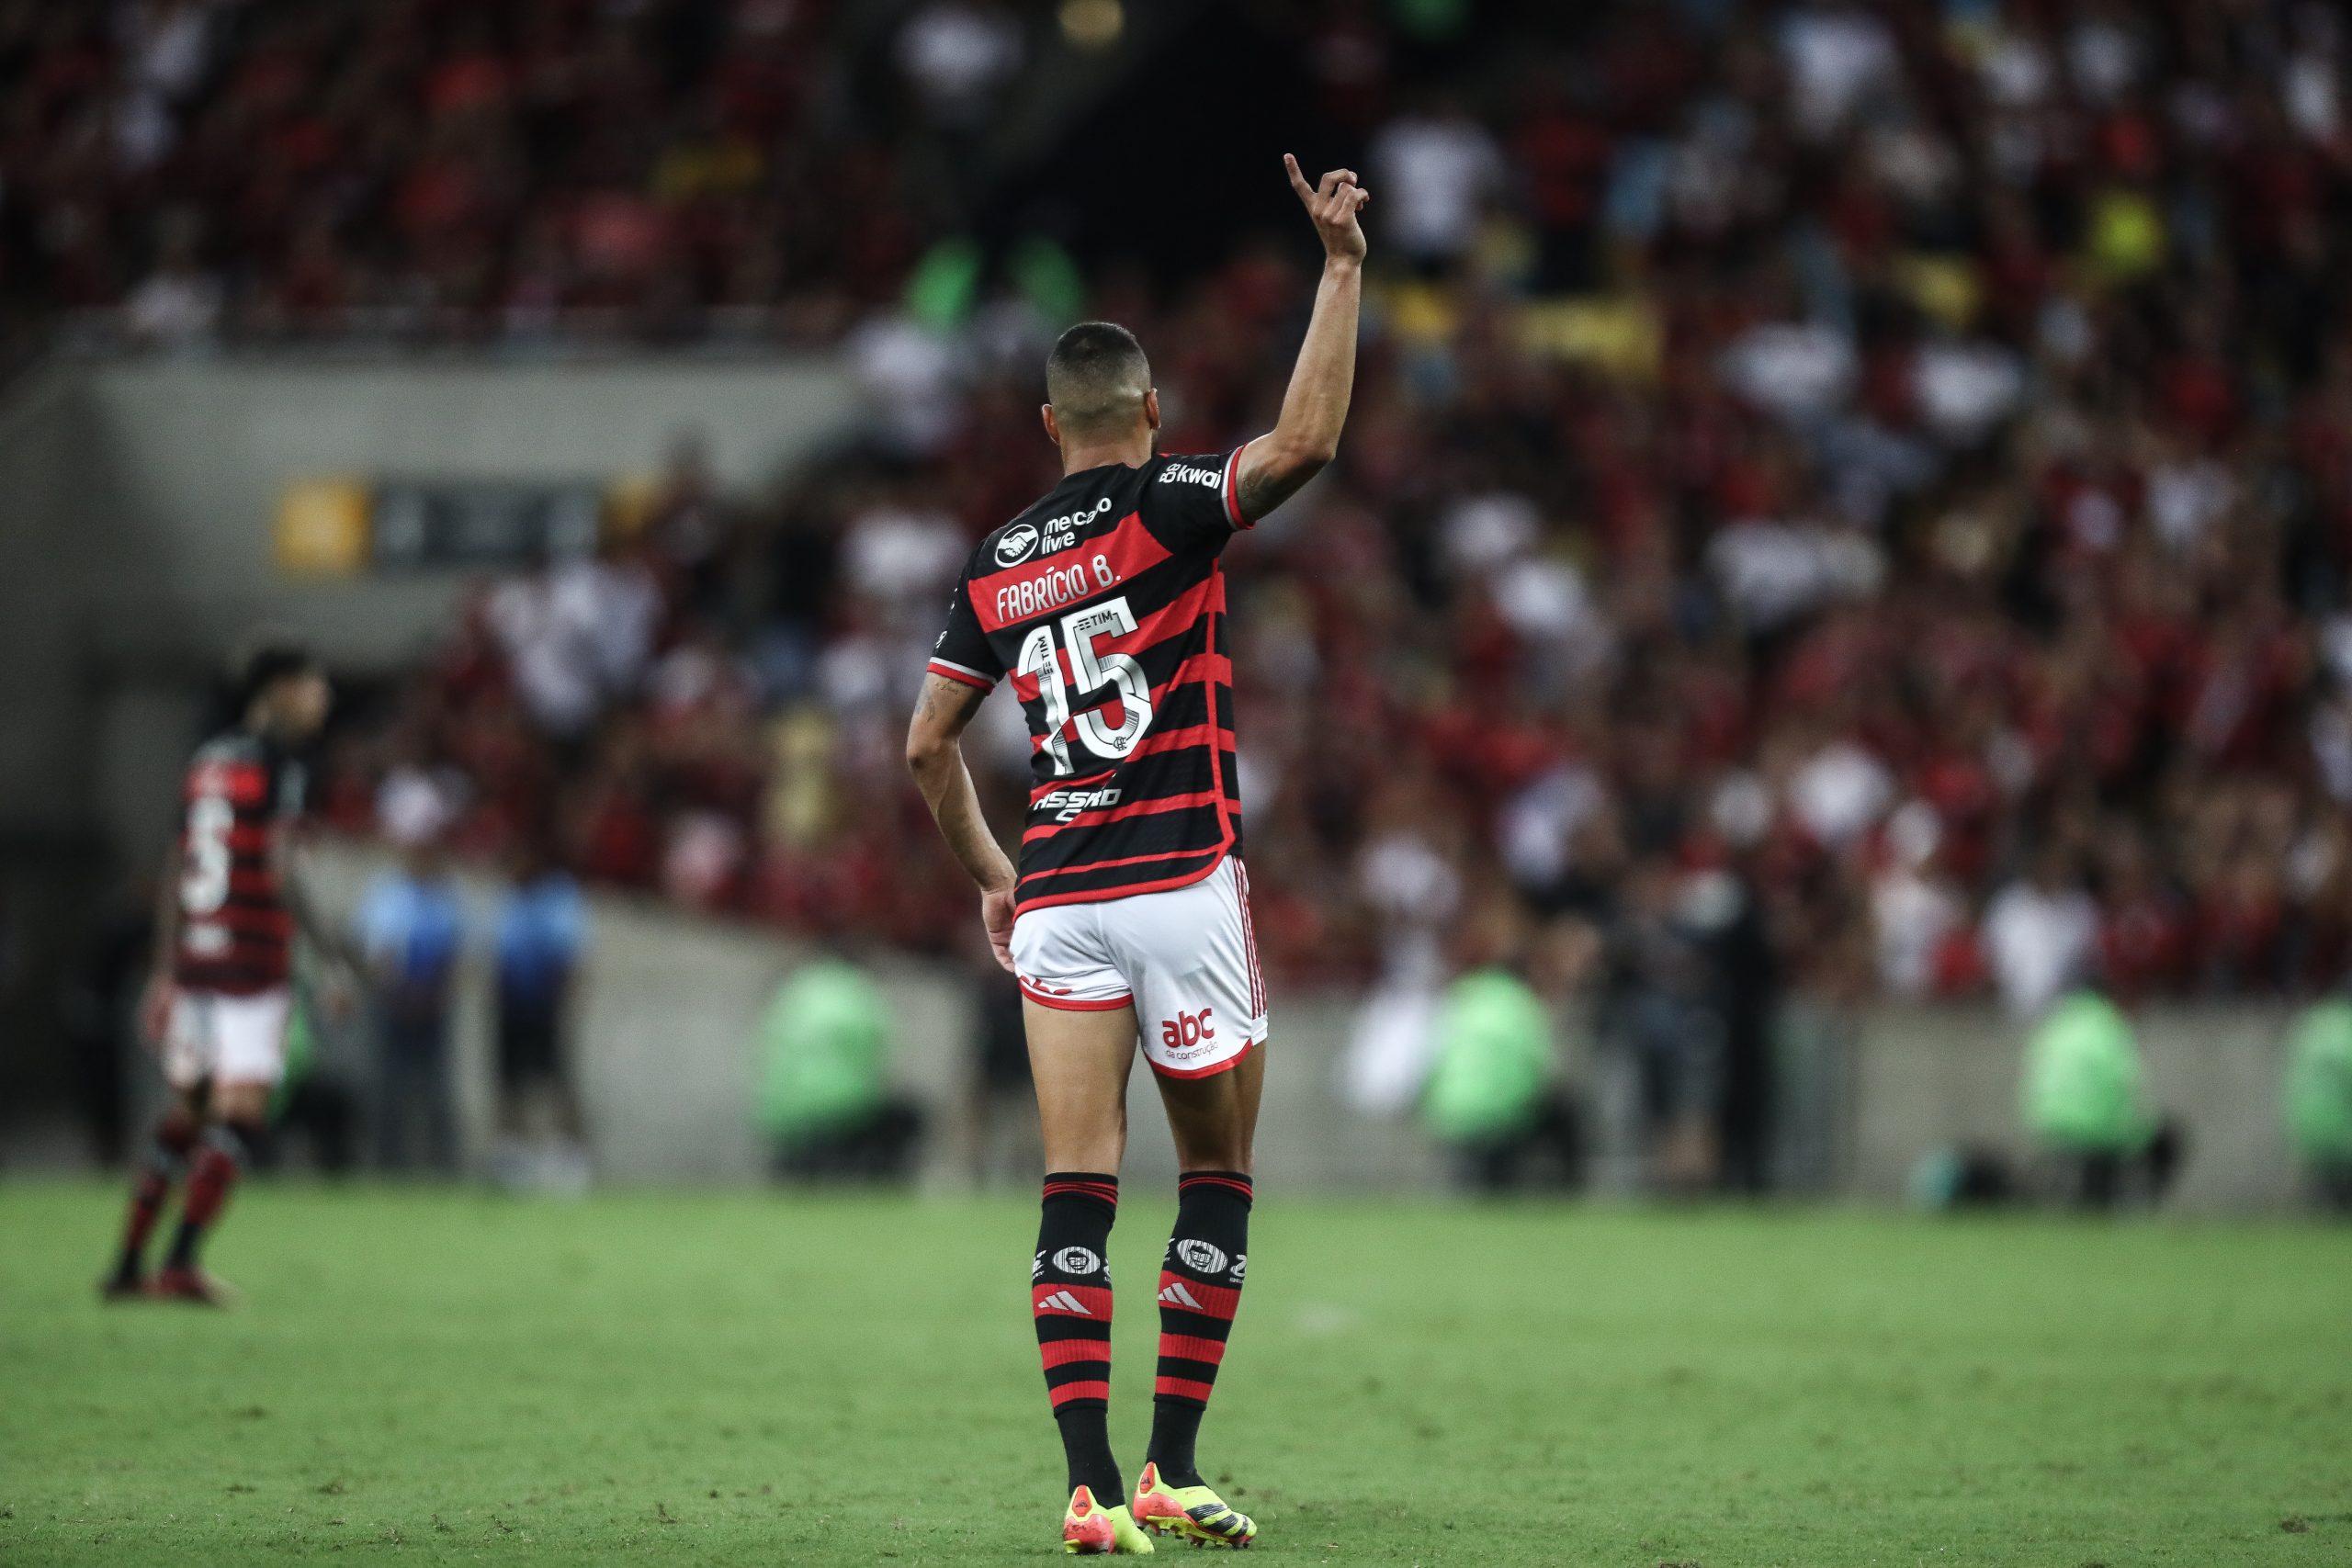 Fabrício Bruno em ação pelo Flamengo na final do Carioca (Foto: Gilvan de Souza/Flamengo)